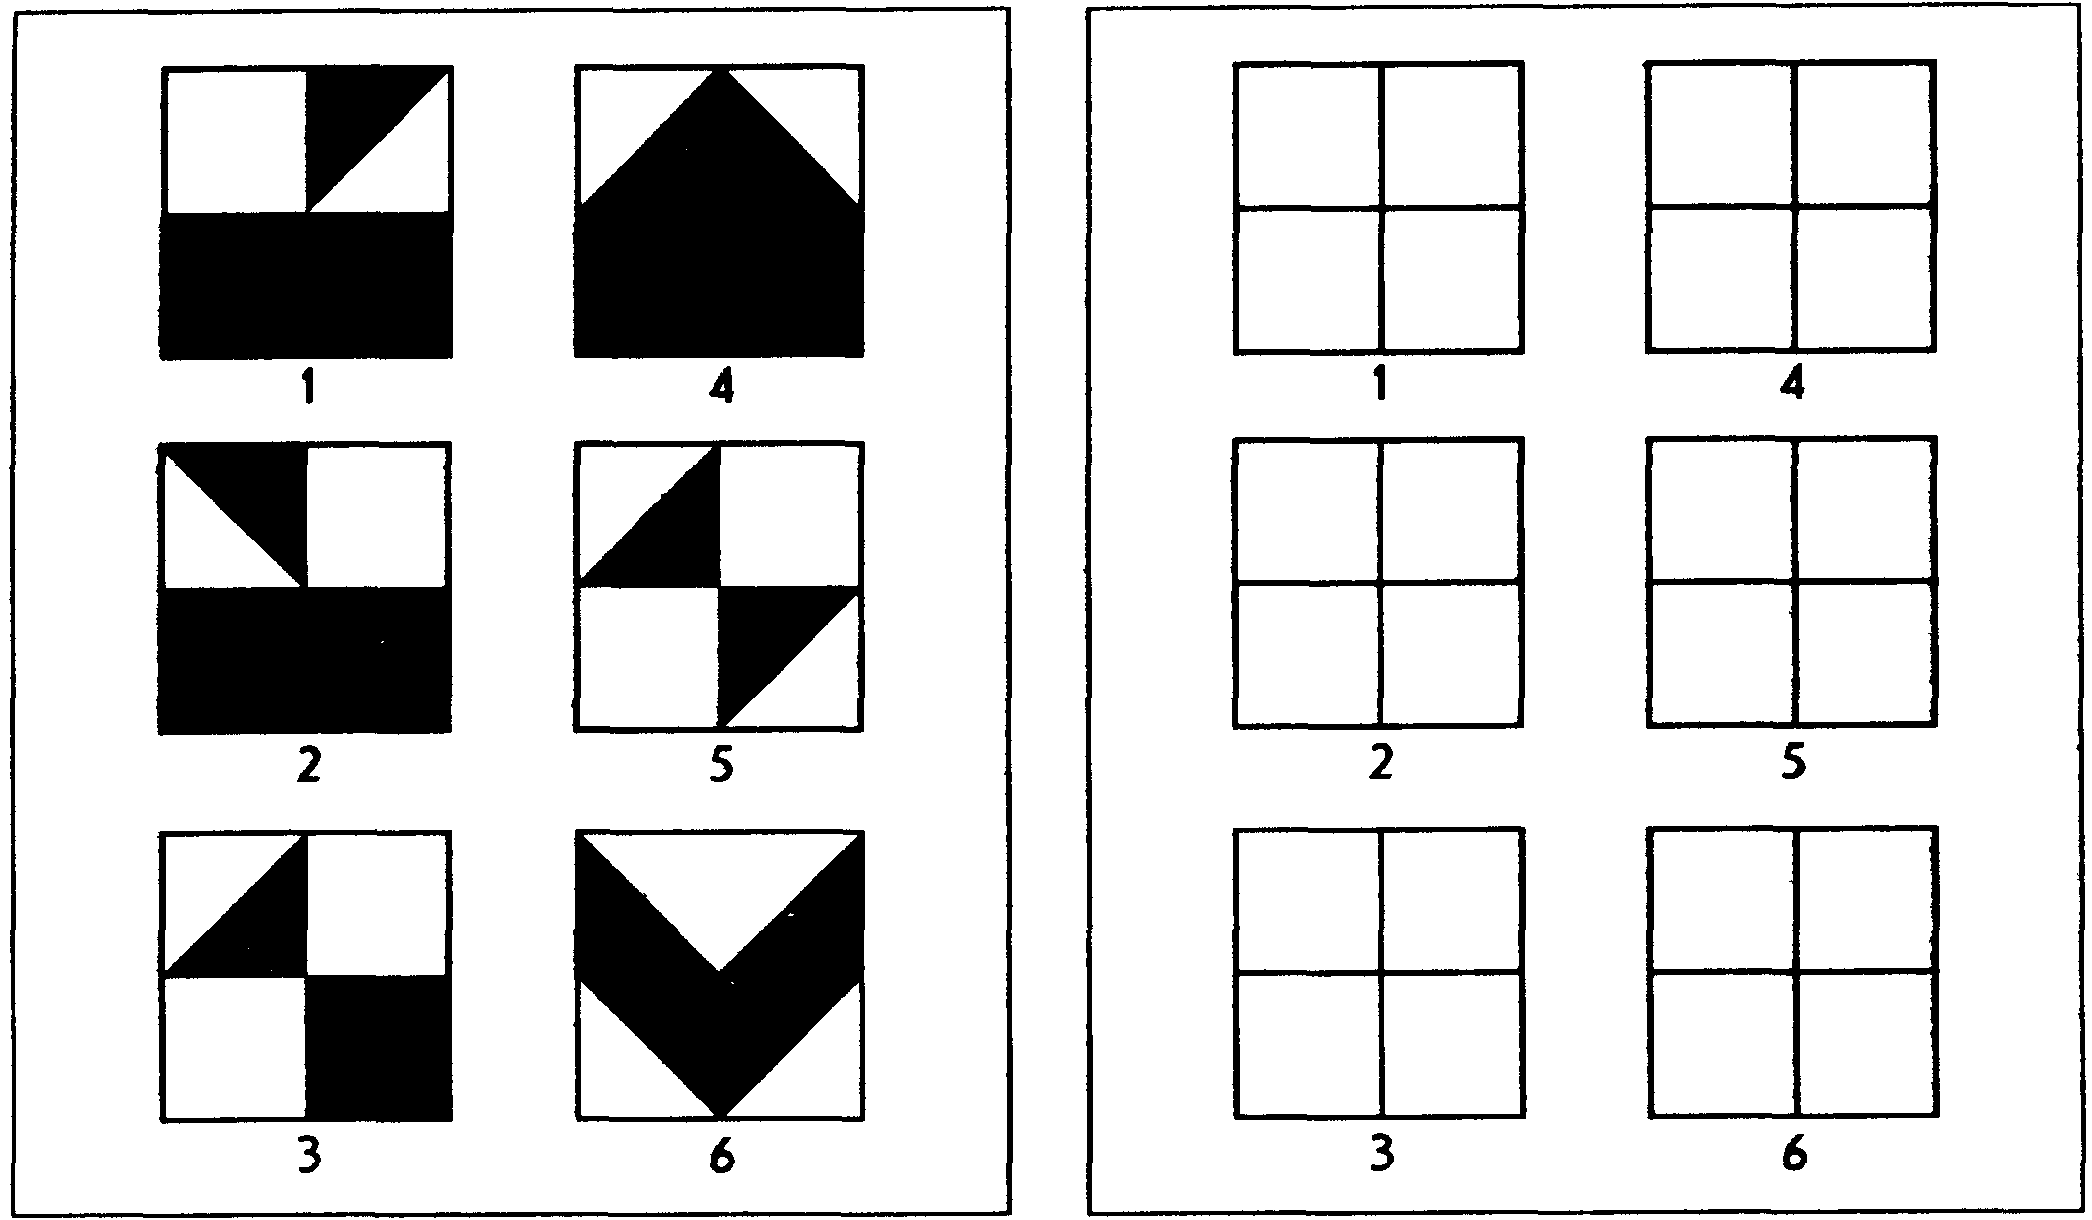 Тест вартегга: инструкция и интерпретация рисунков в квадратах